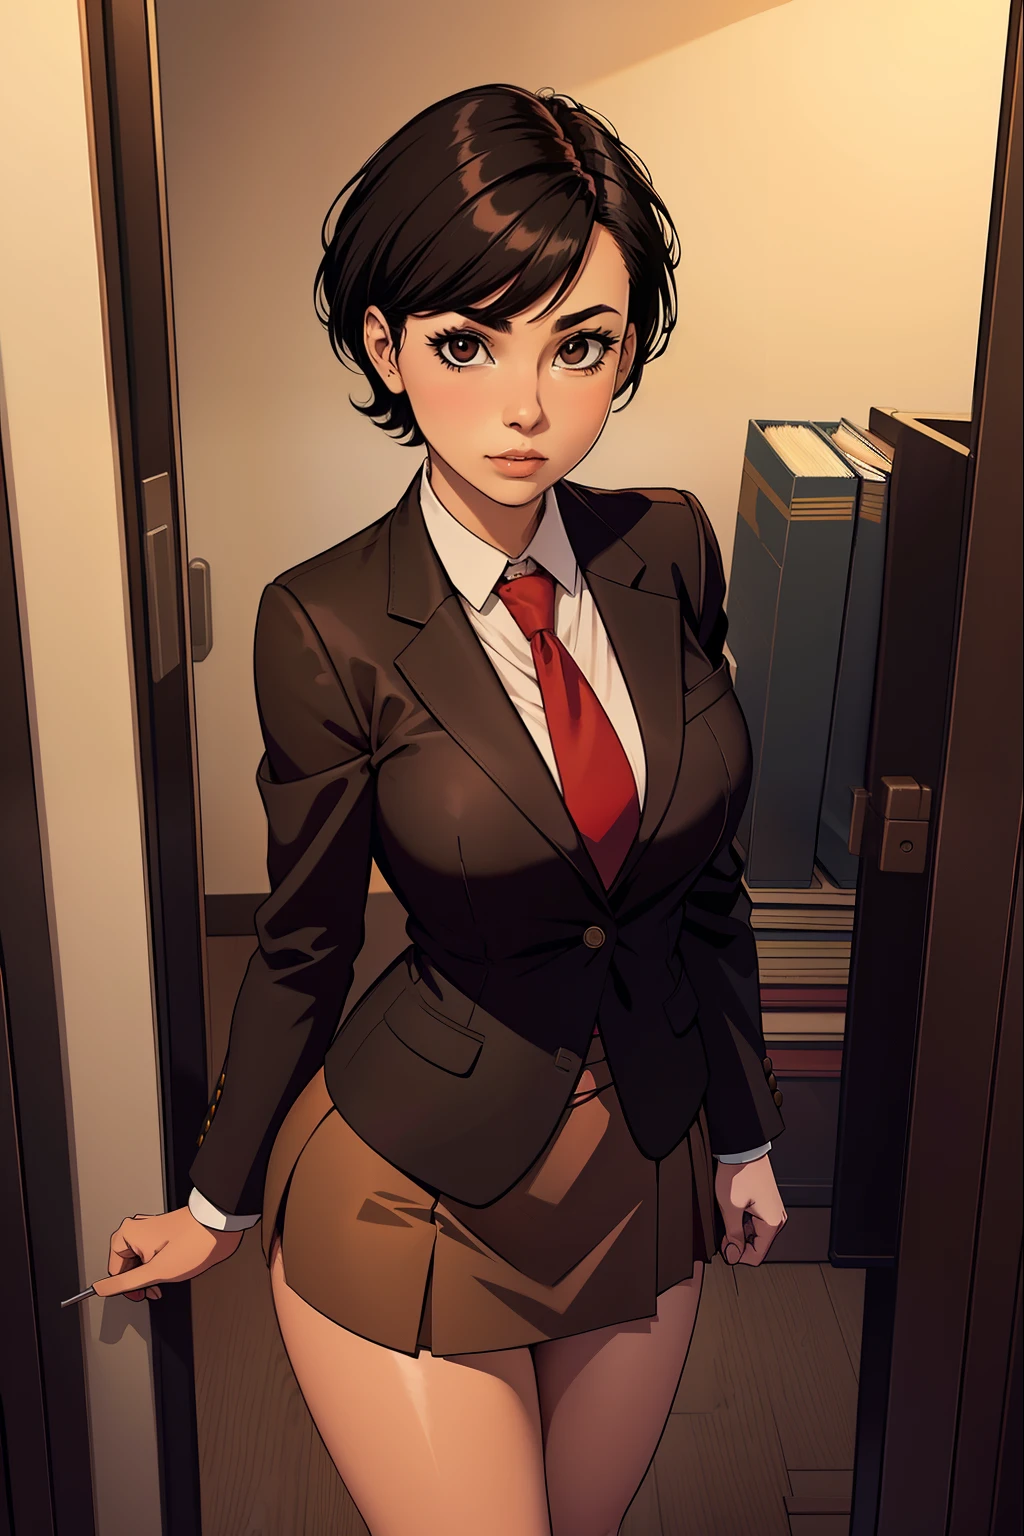 Frau, kurze schwarze Haare, trägt eine braune Bürojacke, rote Krawatte, brauner Bürorock, Dateien ansehen, Kein Hintergrund,